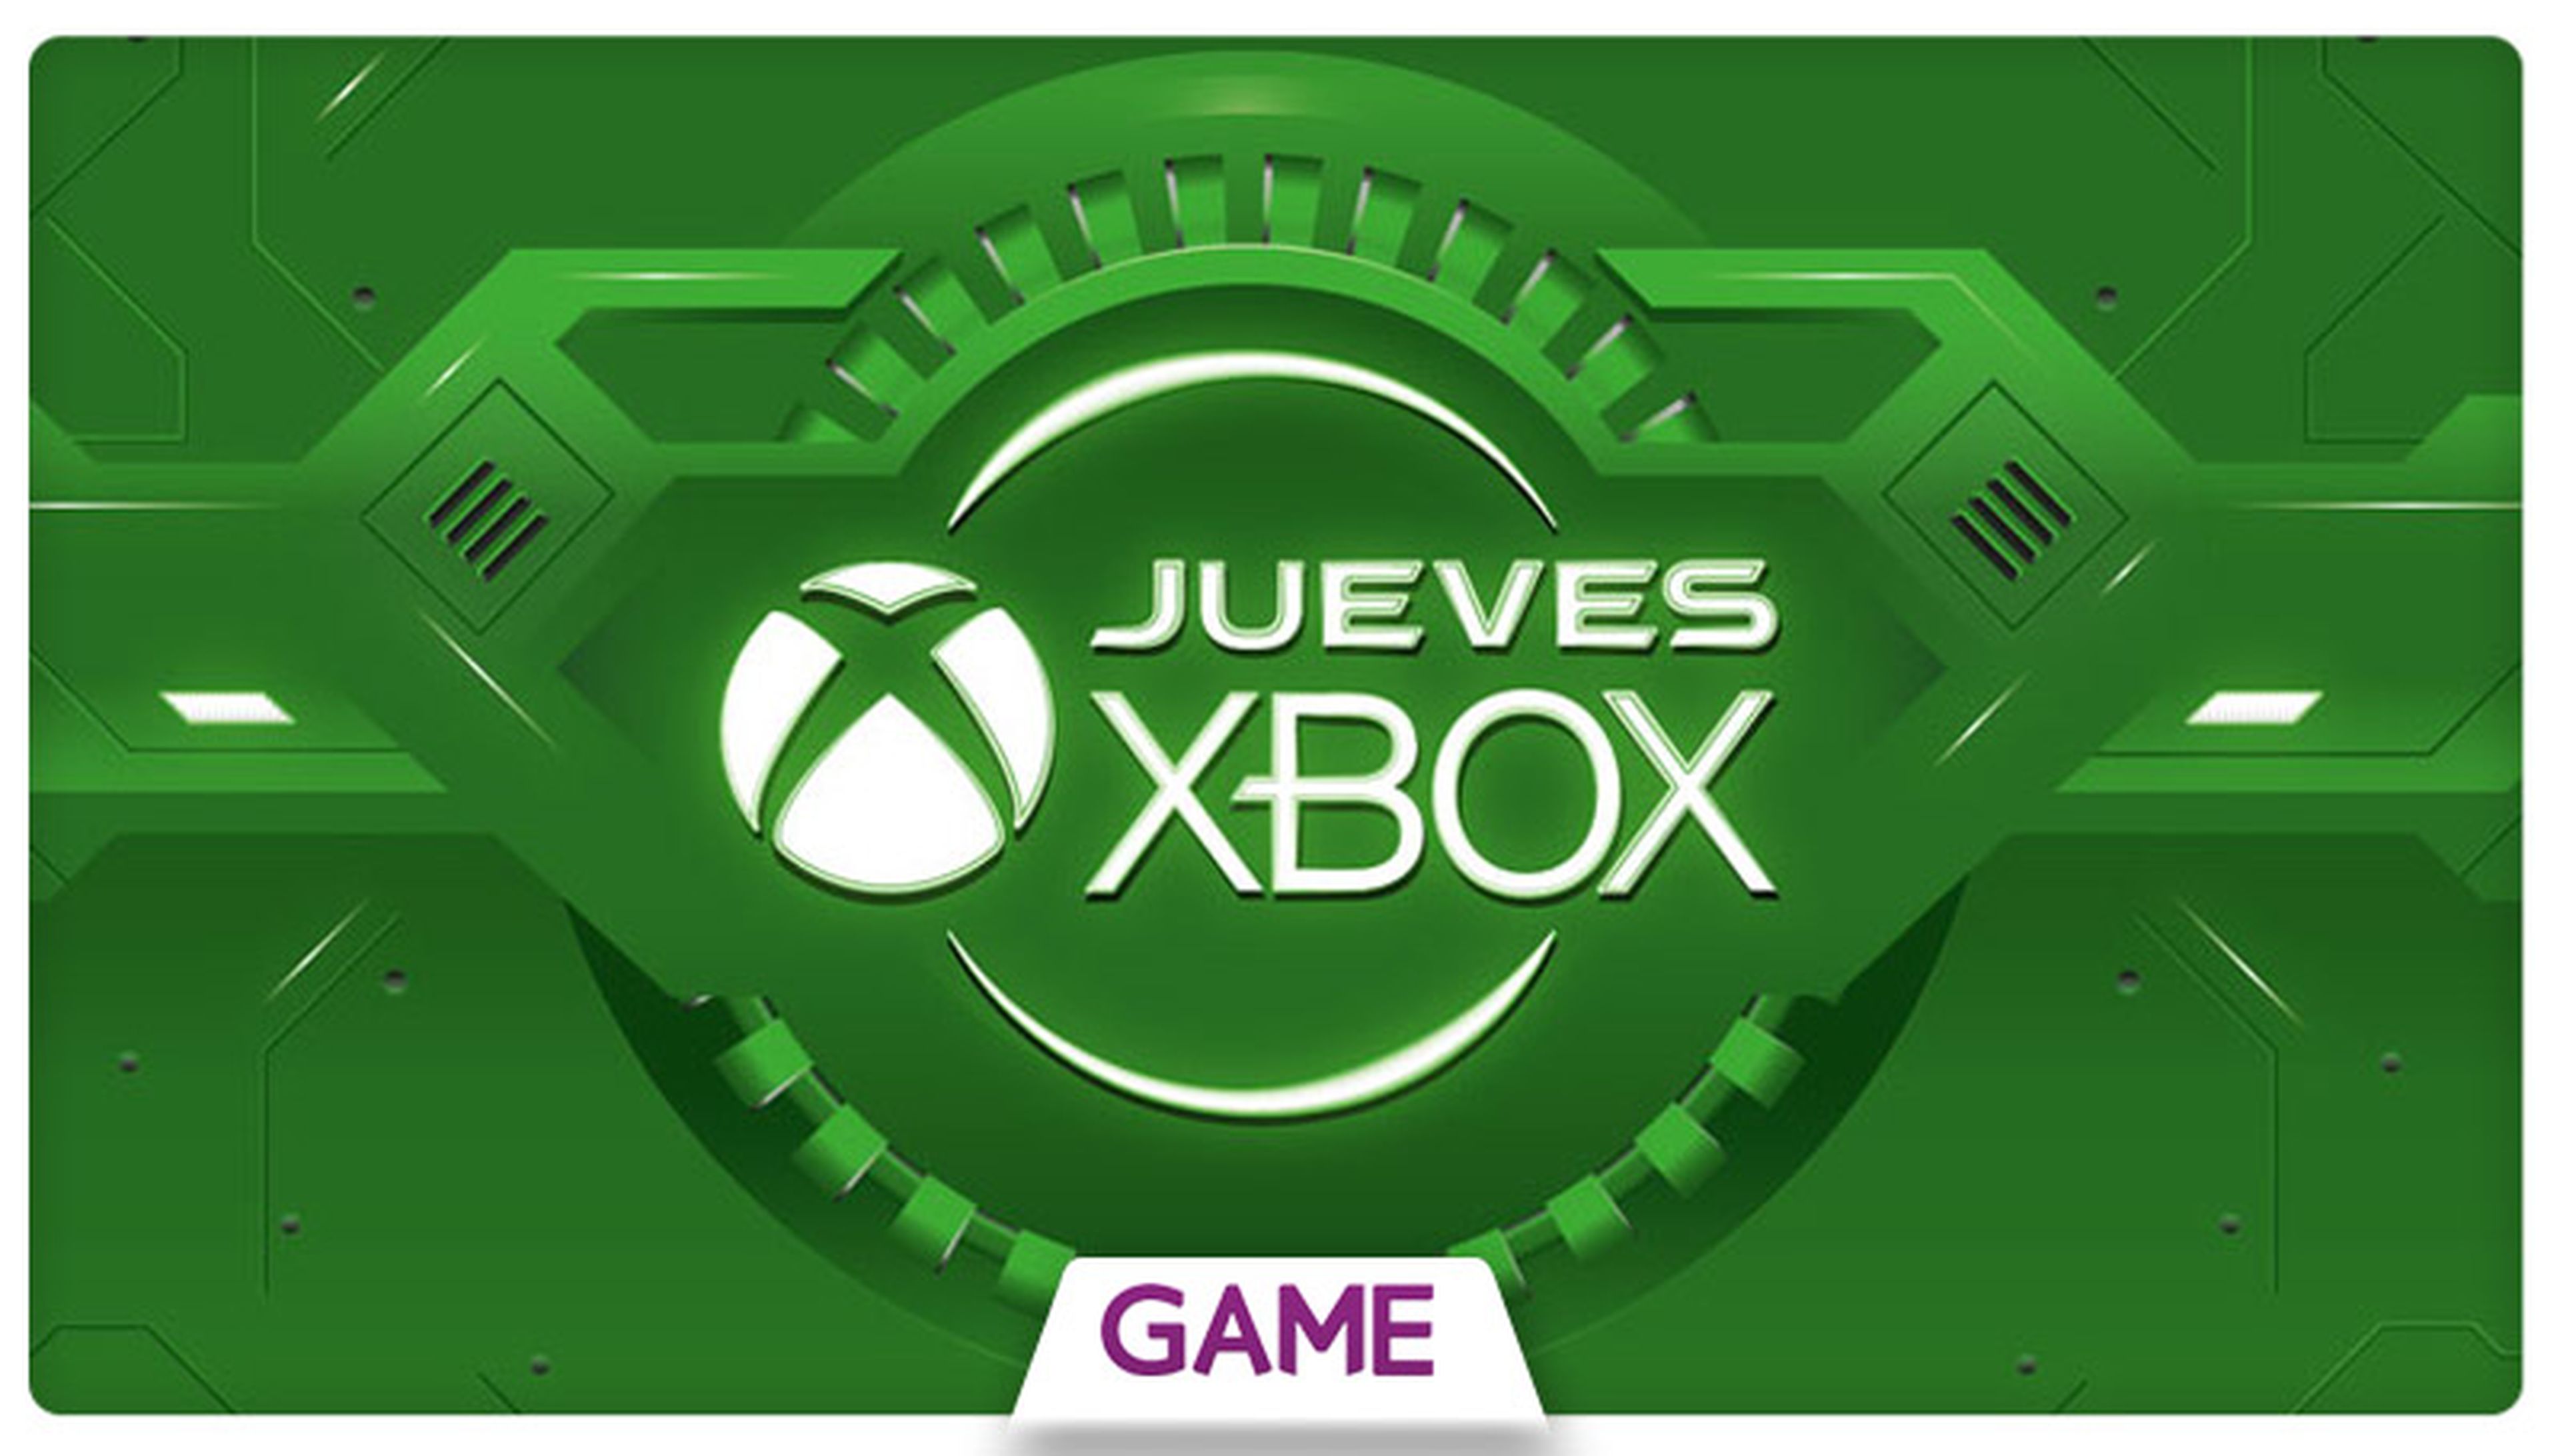 Jueves Xbox en GAME: Ofertas del 29/10/2015